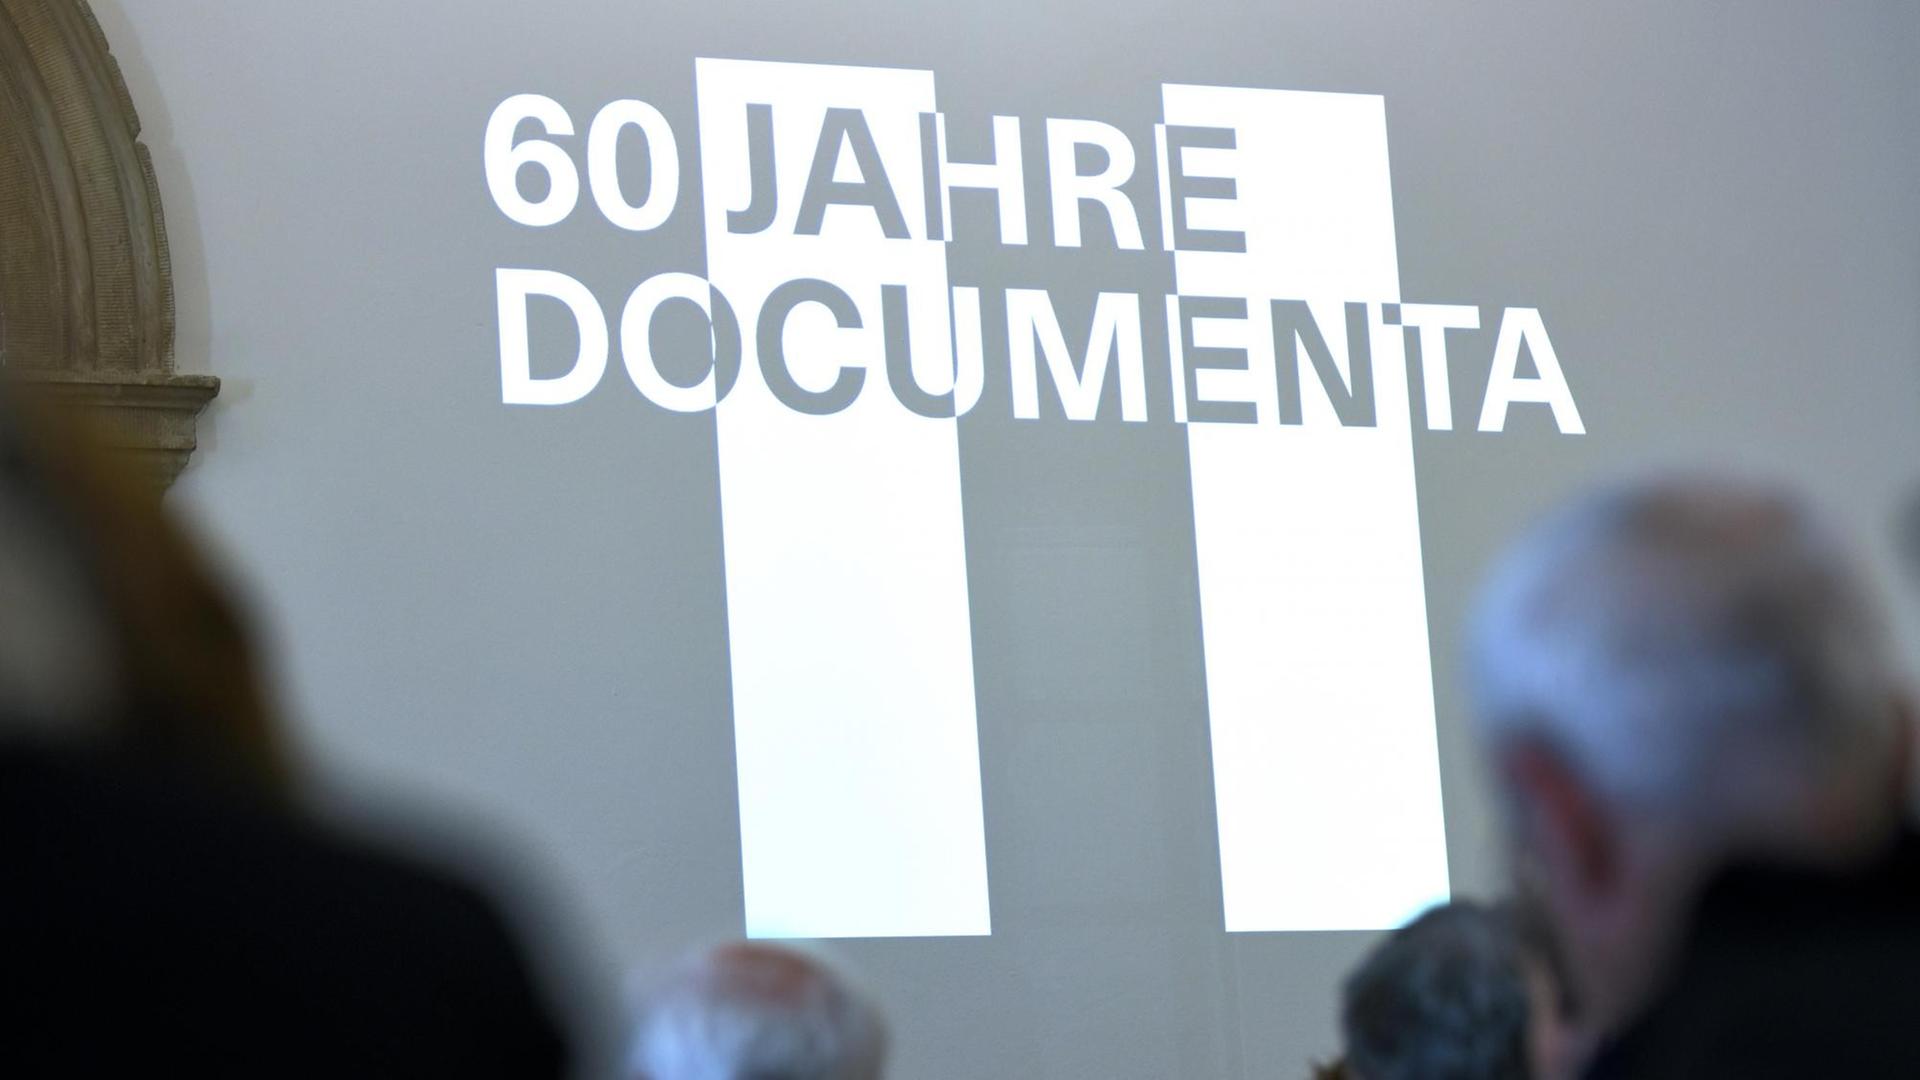 Der Schriftzug "60 Jahre documenta" erscheint als Licht-Bild an einer Museums-Wand.